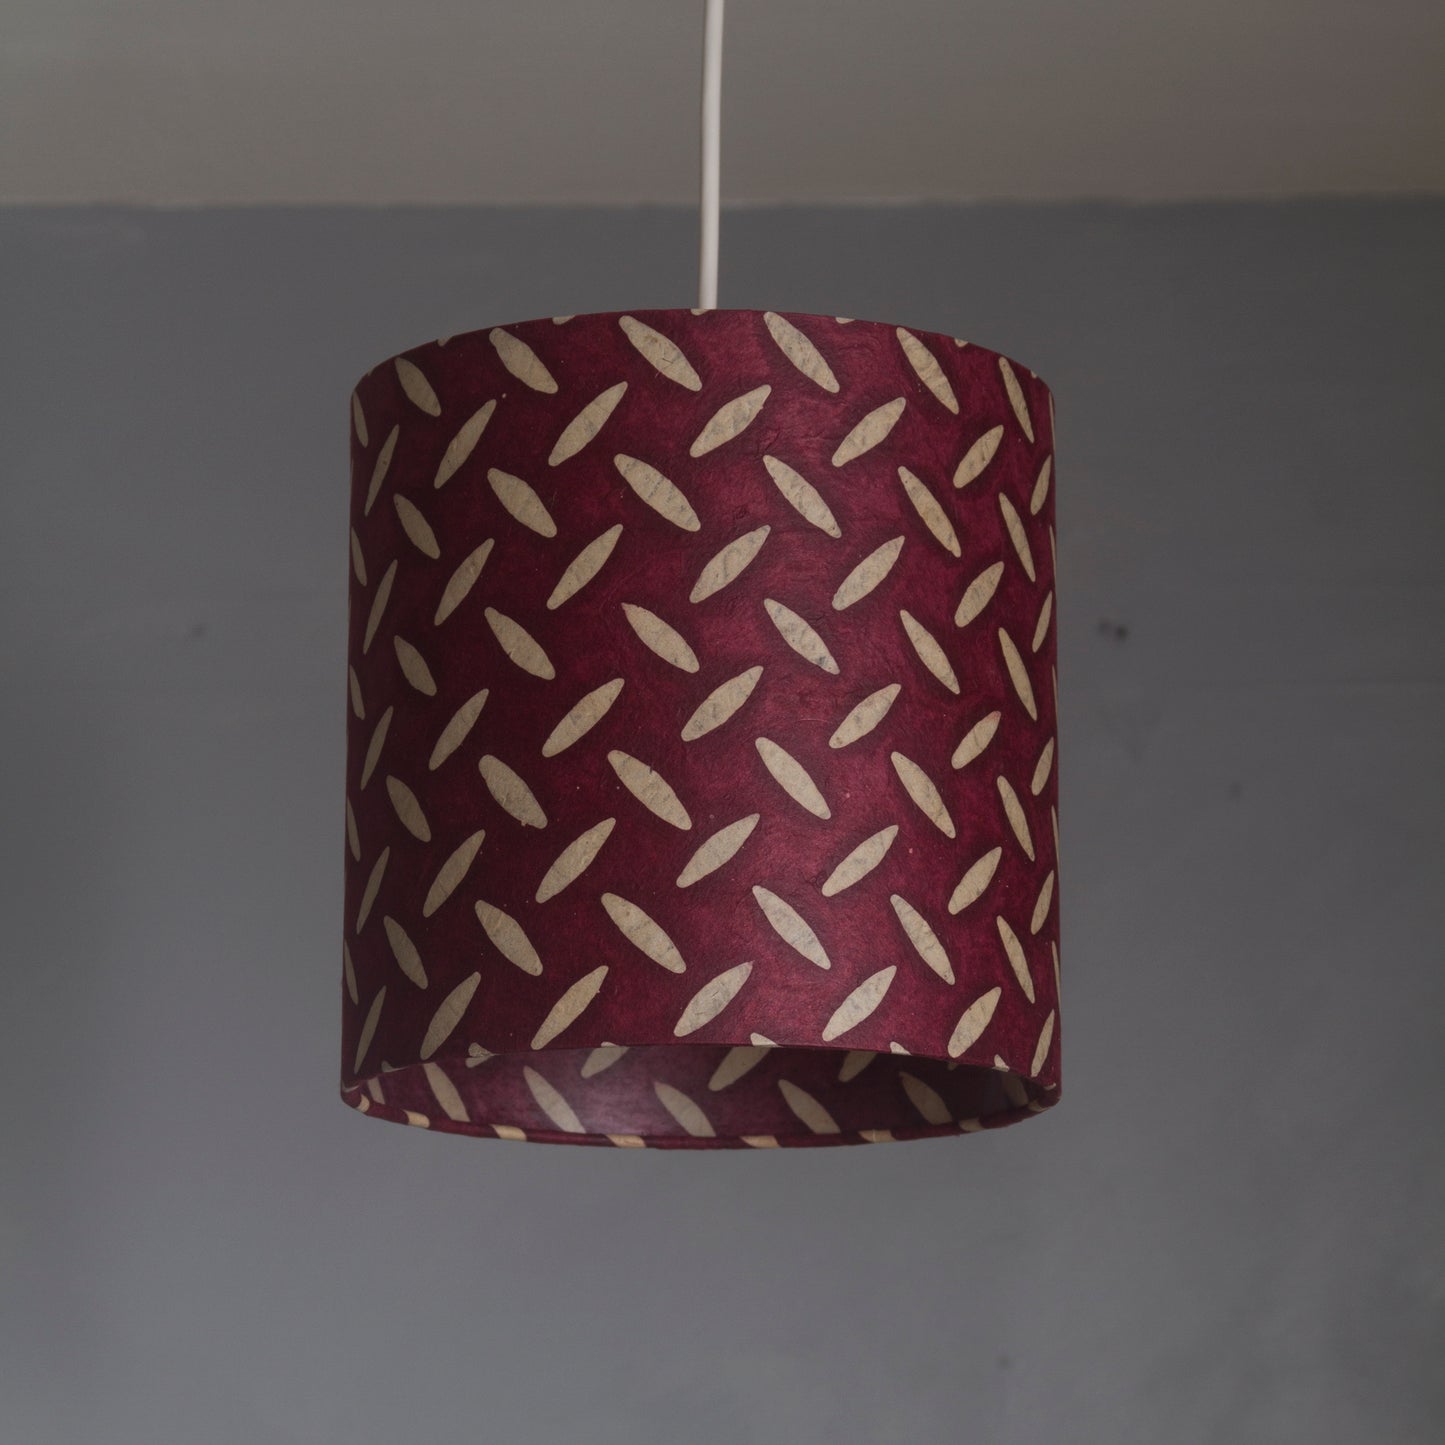 Oval Lamp Shade - P14 - Batik Tread Plate Cranberry, 20cm(w) x 20cm(h) x 13cm(d)